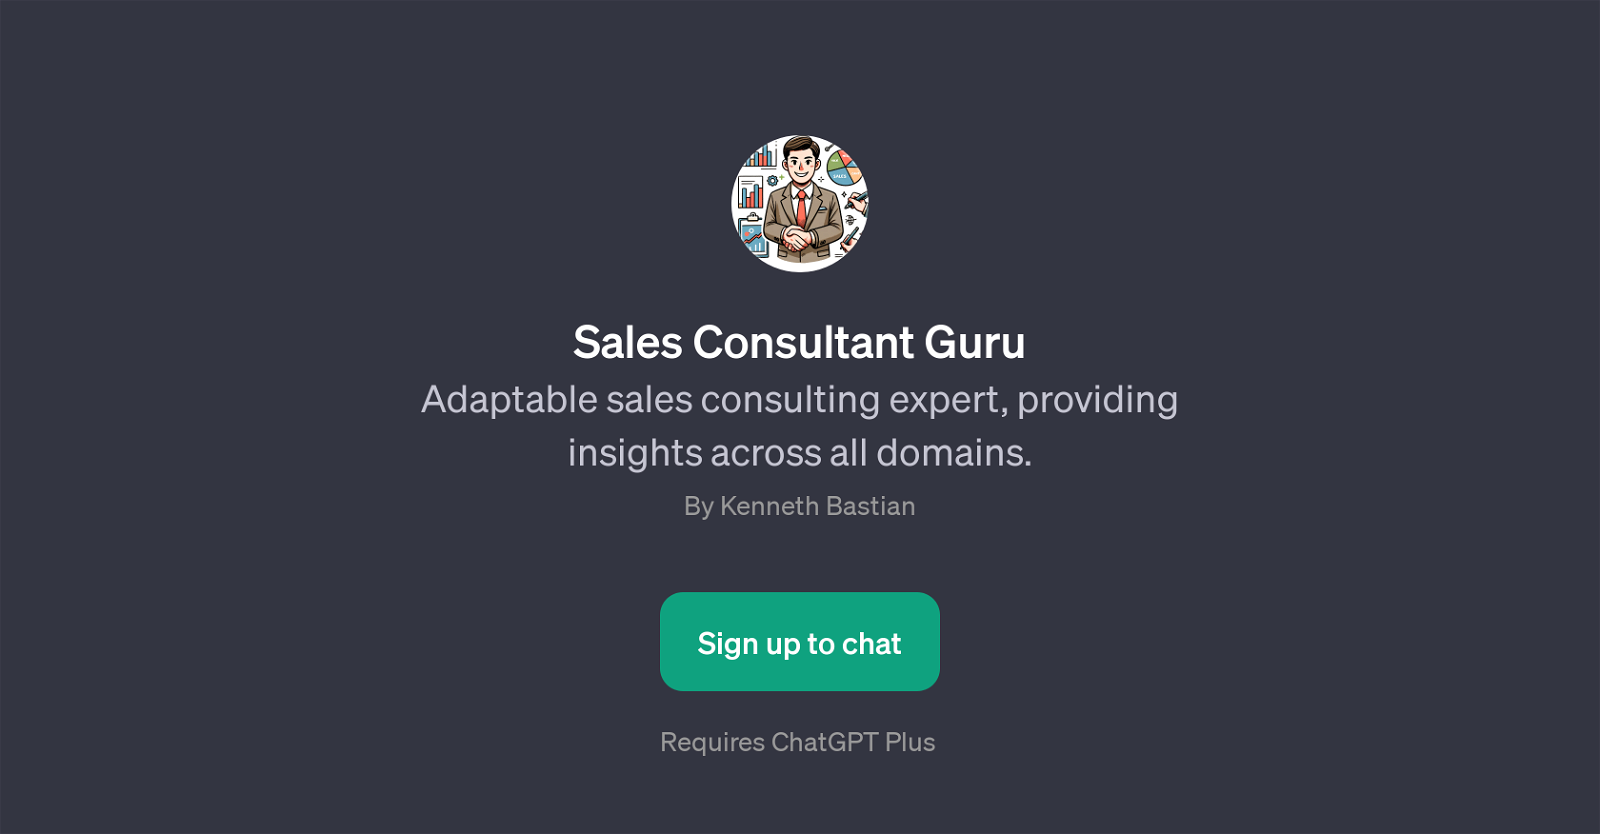 Sales Consultant Guru website